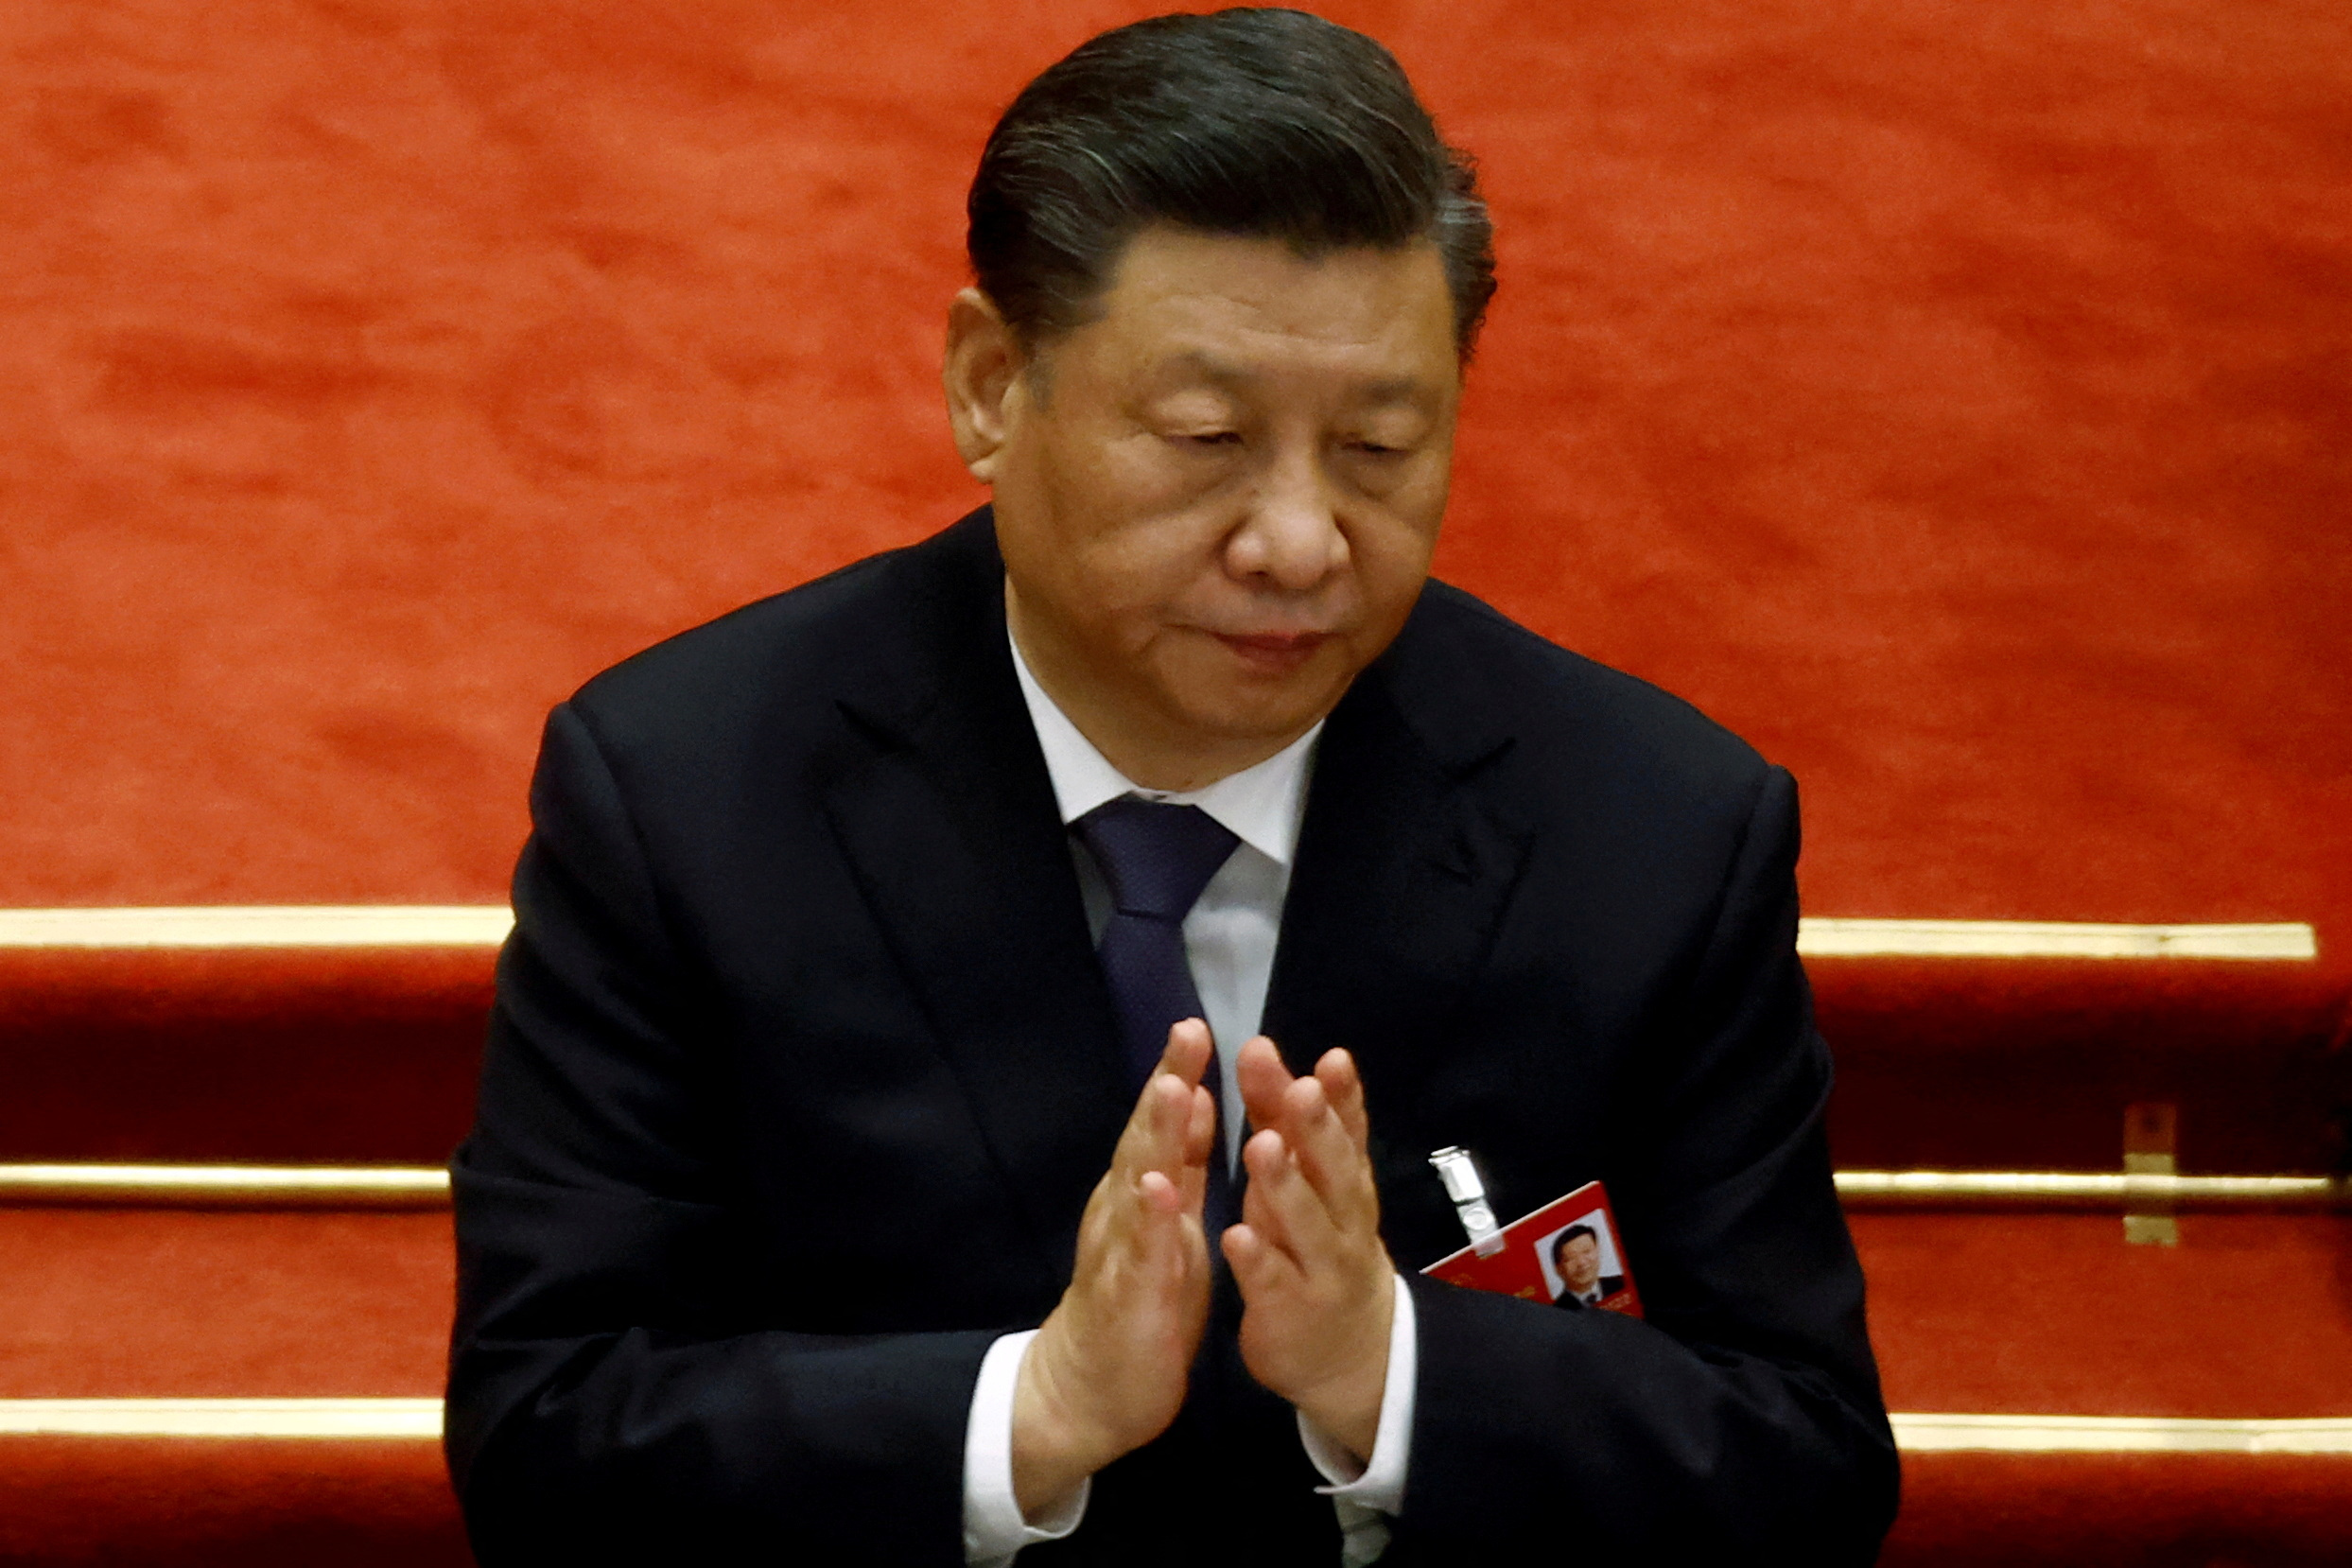 El G7 condenó la falta de transparencia de China que “distorsiona el mercado”